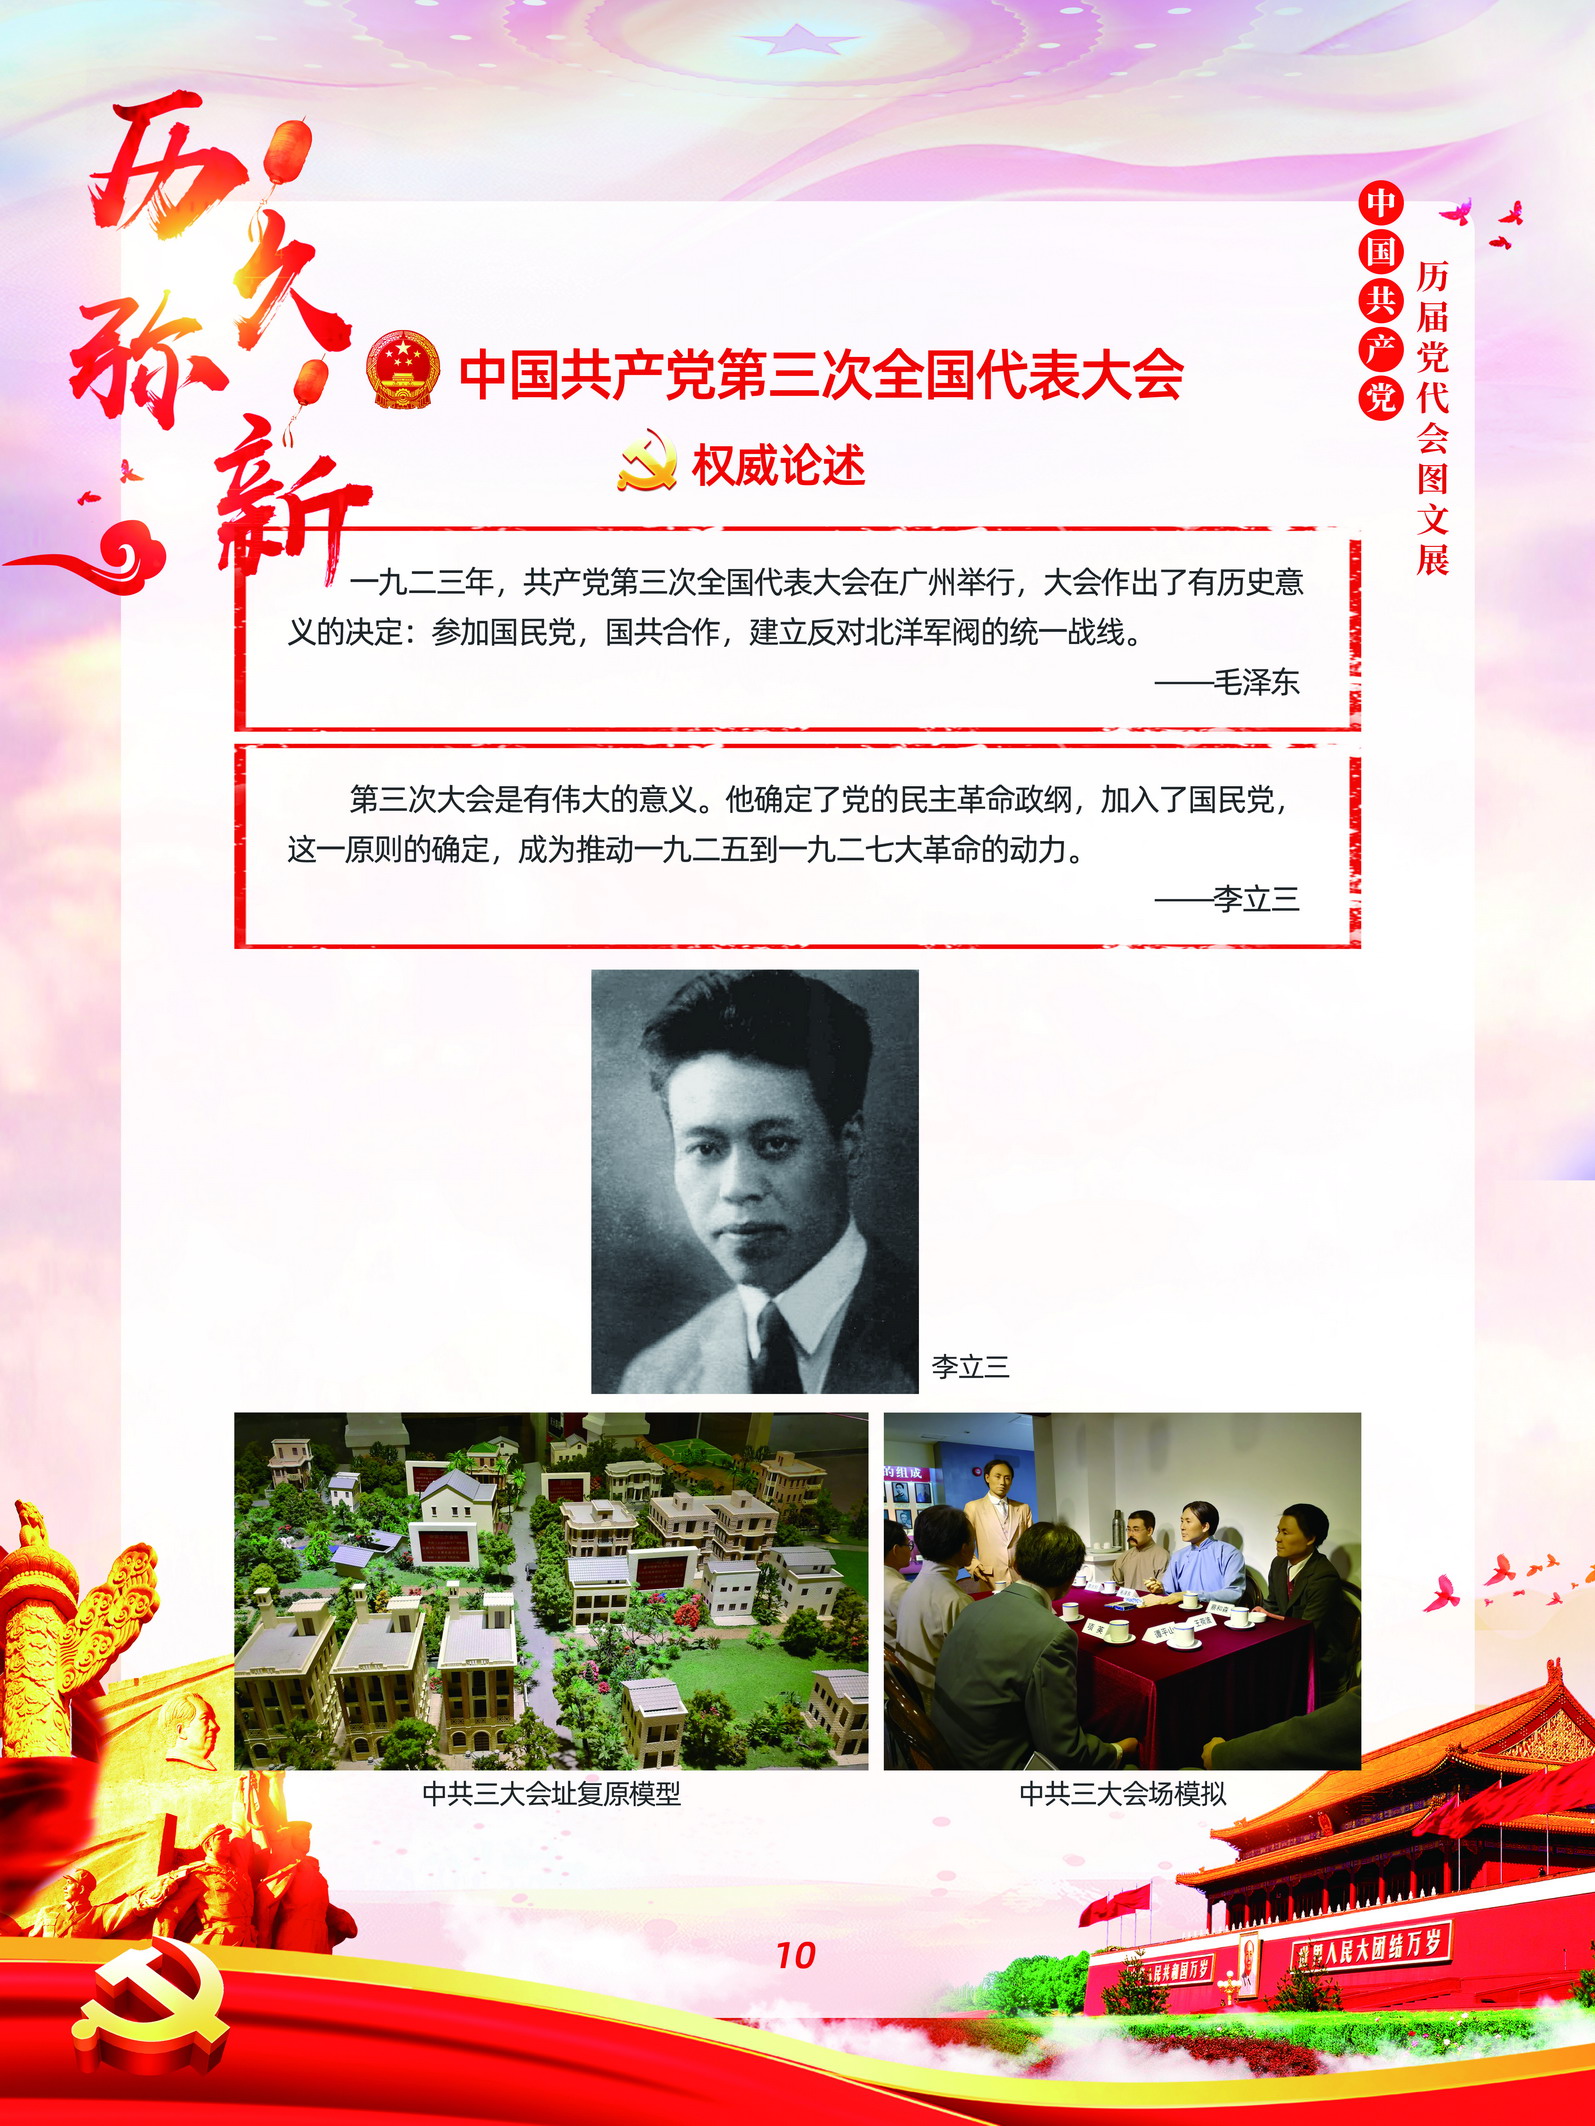 中国共产党历届党代会图文展_图9